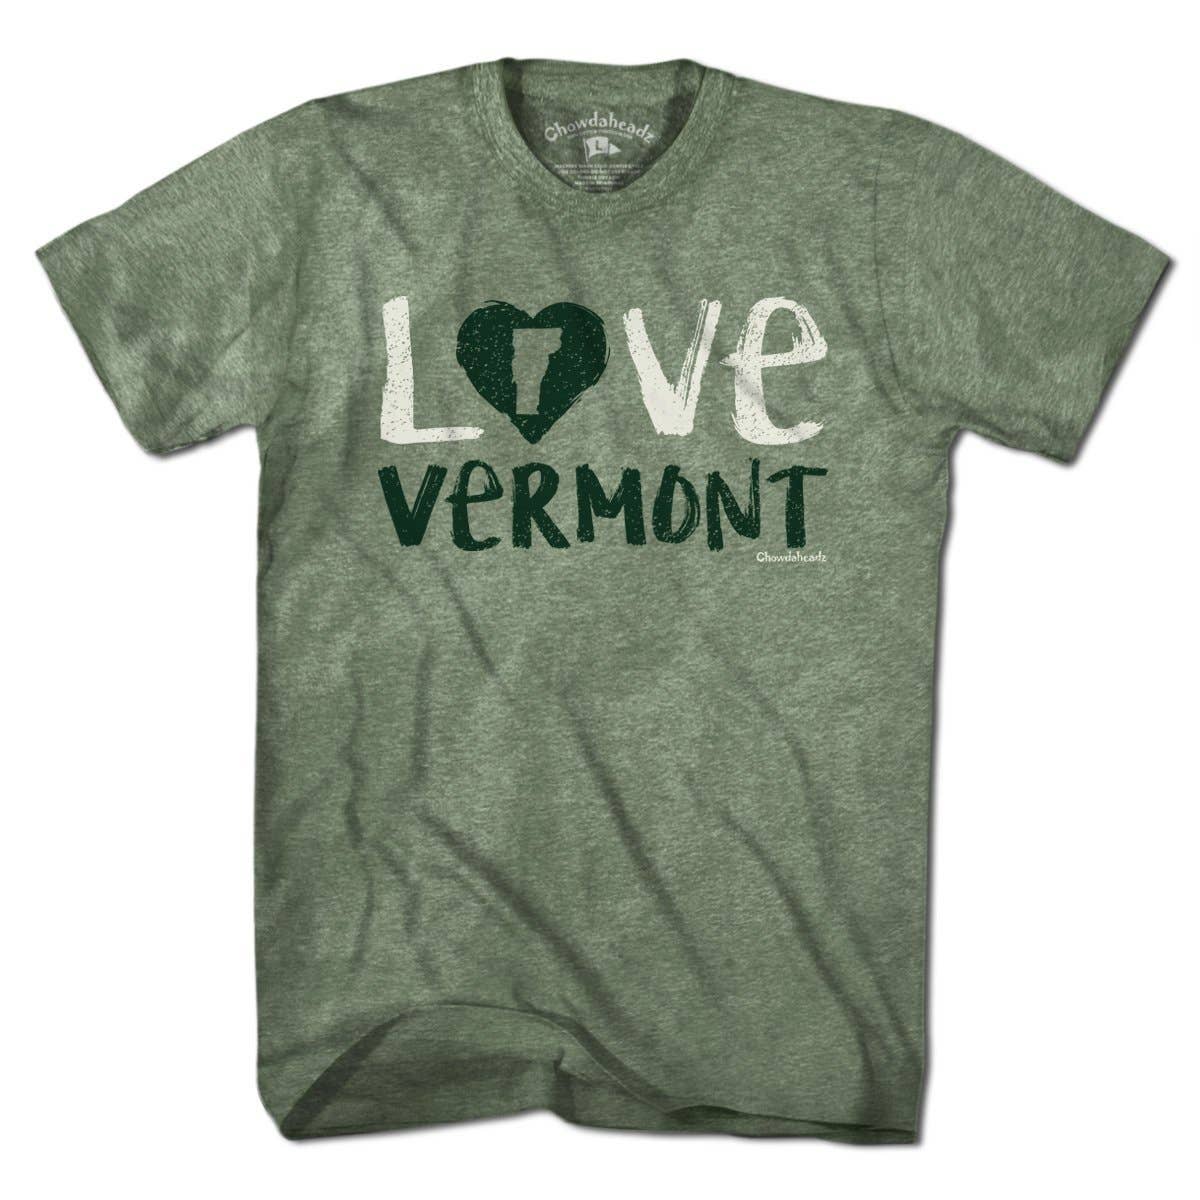 Chowdaheadz - Love Vermont T-Shirt